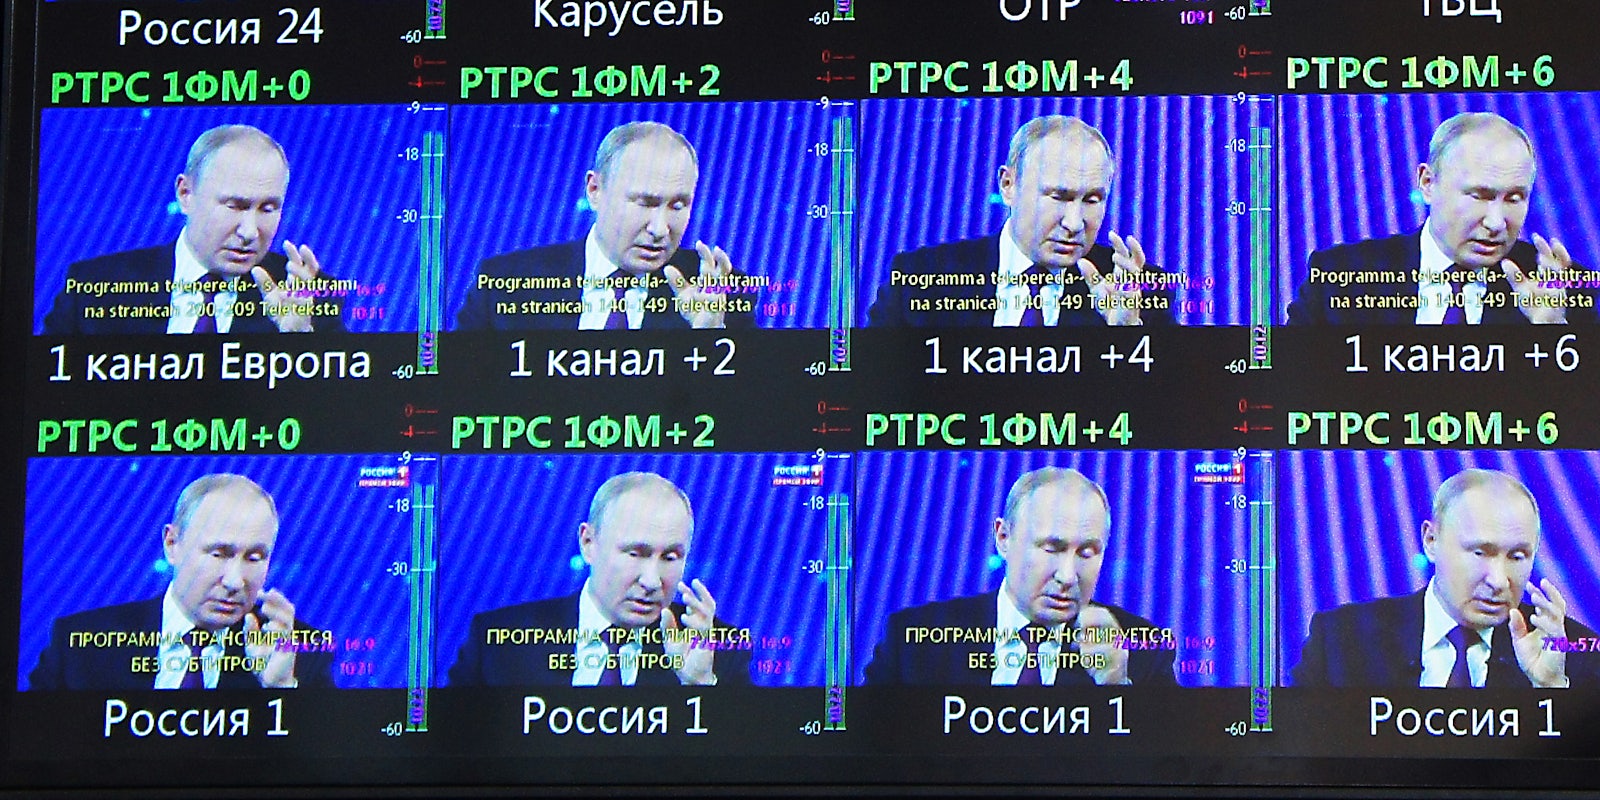 Putin on multiple TV screens.